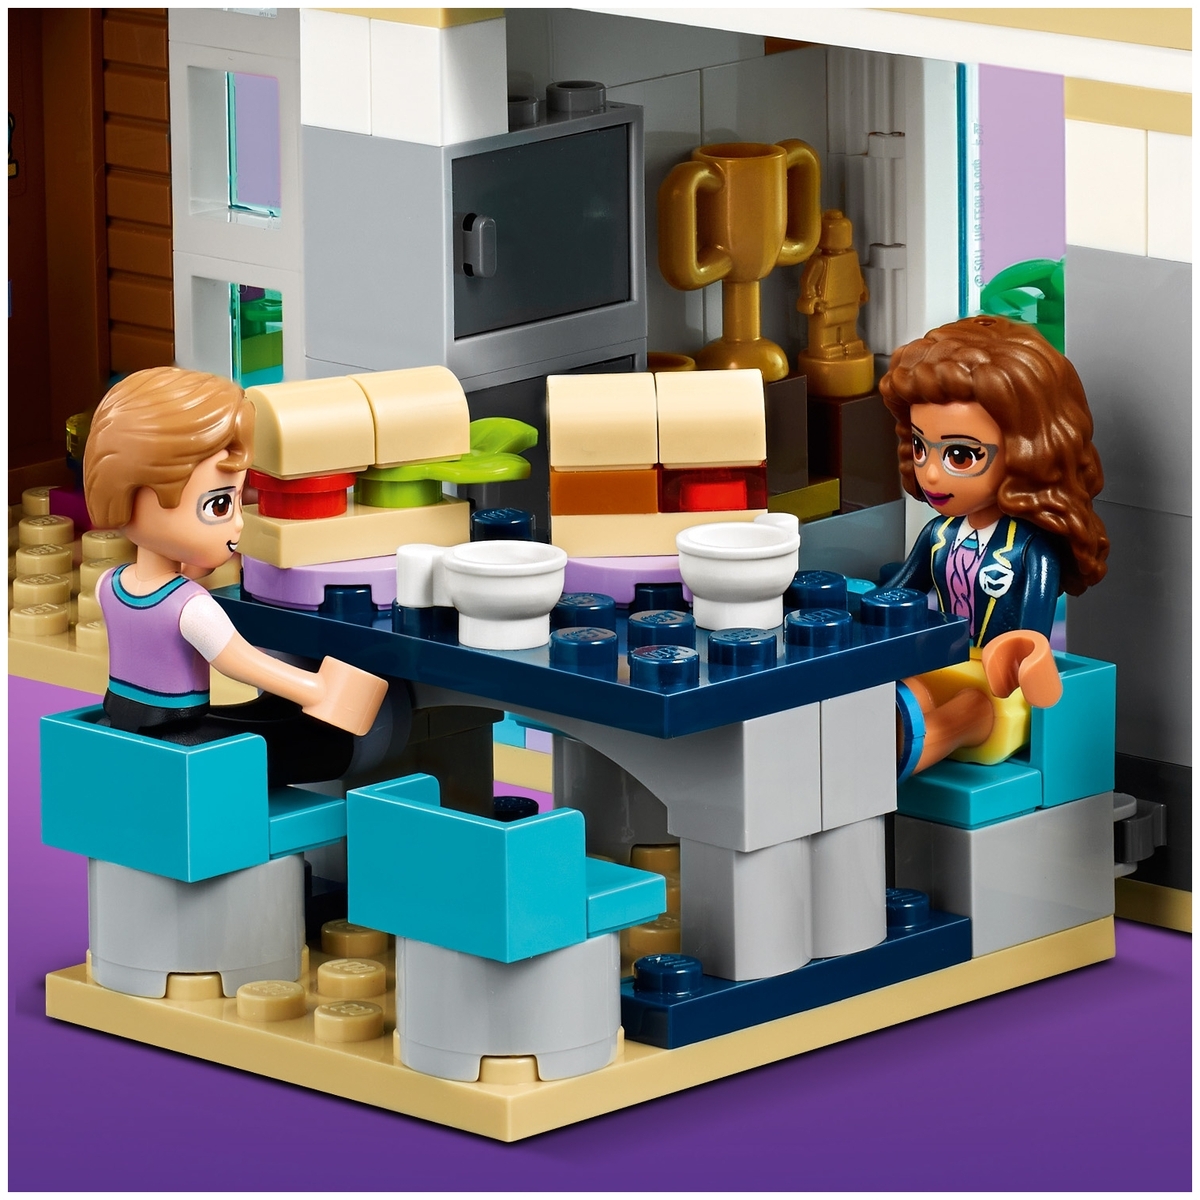 Конструктор LEGO 41682 Подружки Школа Хартлейк Сити заказать